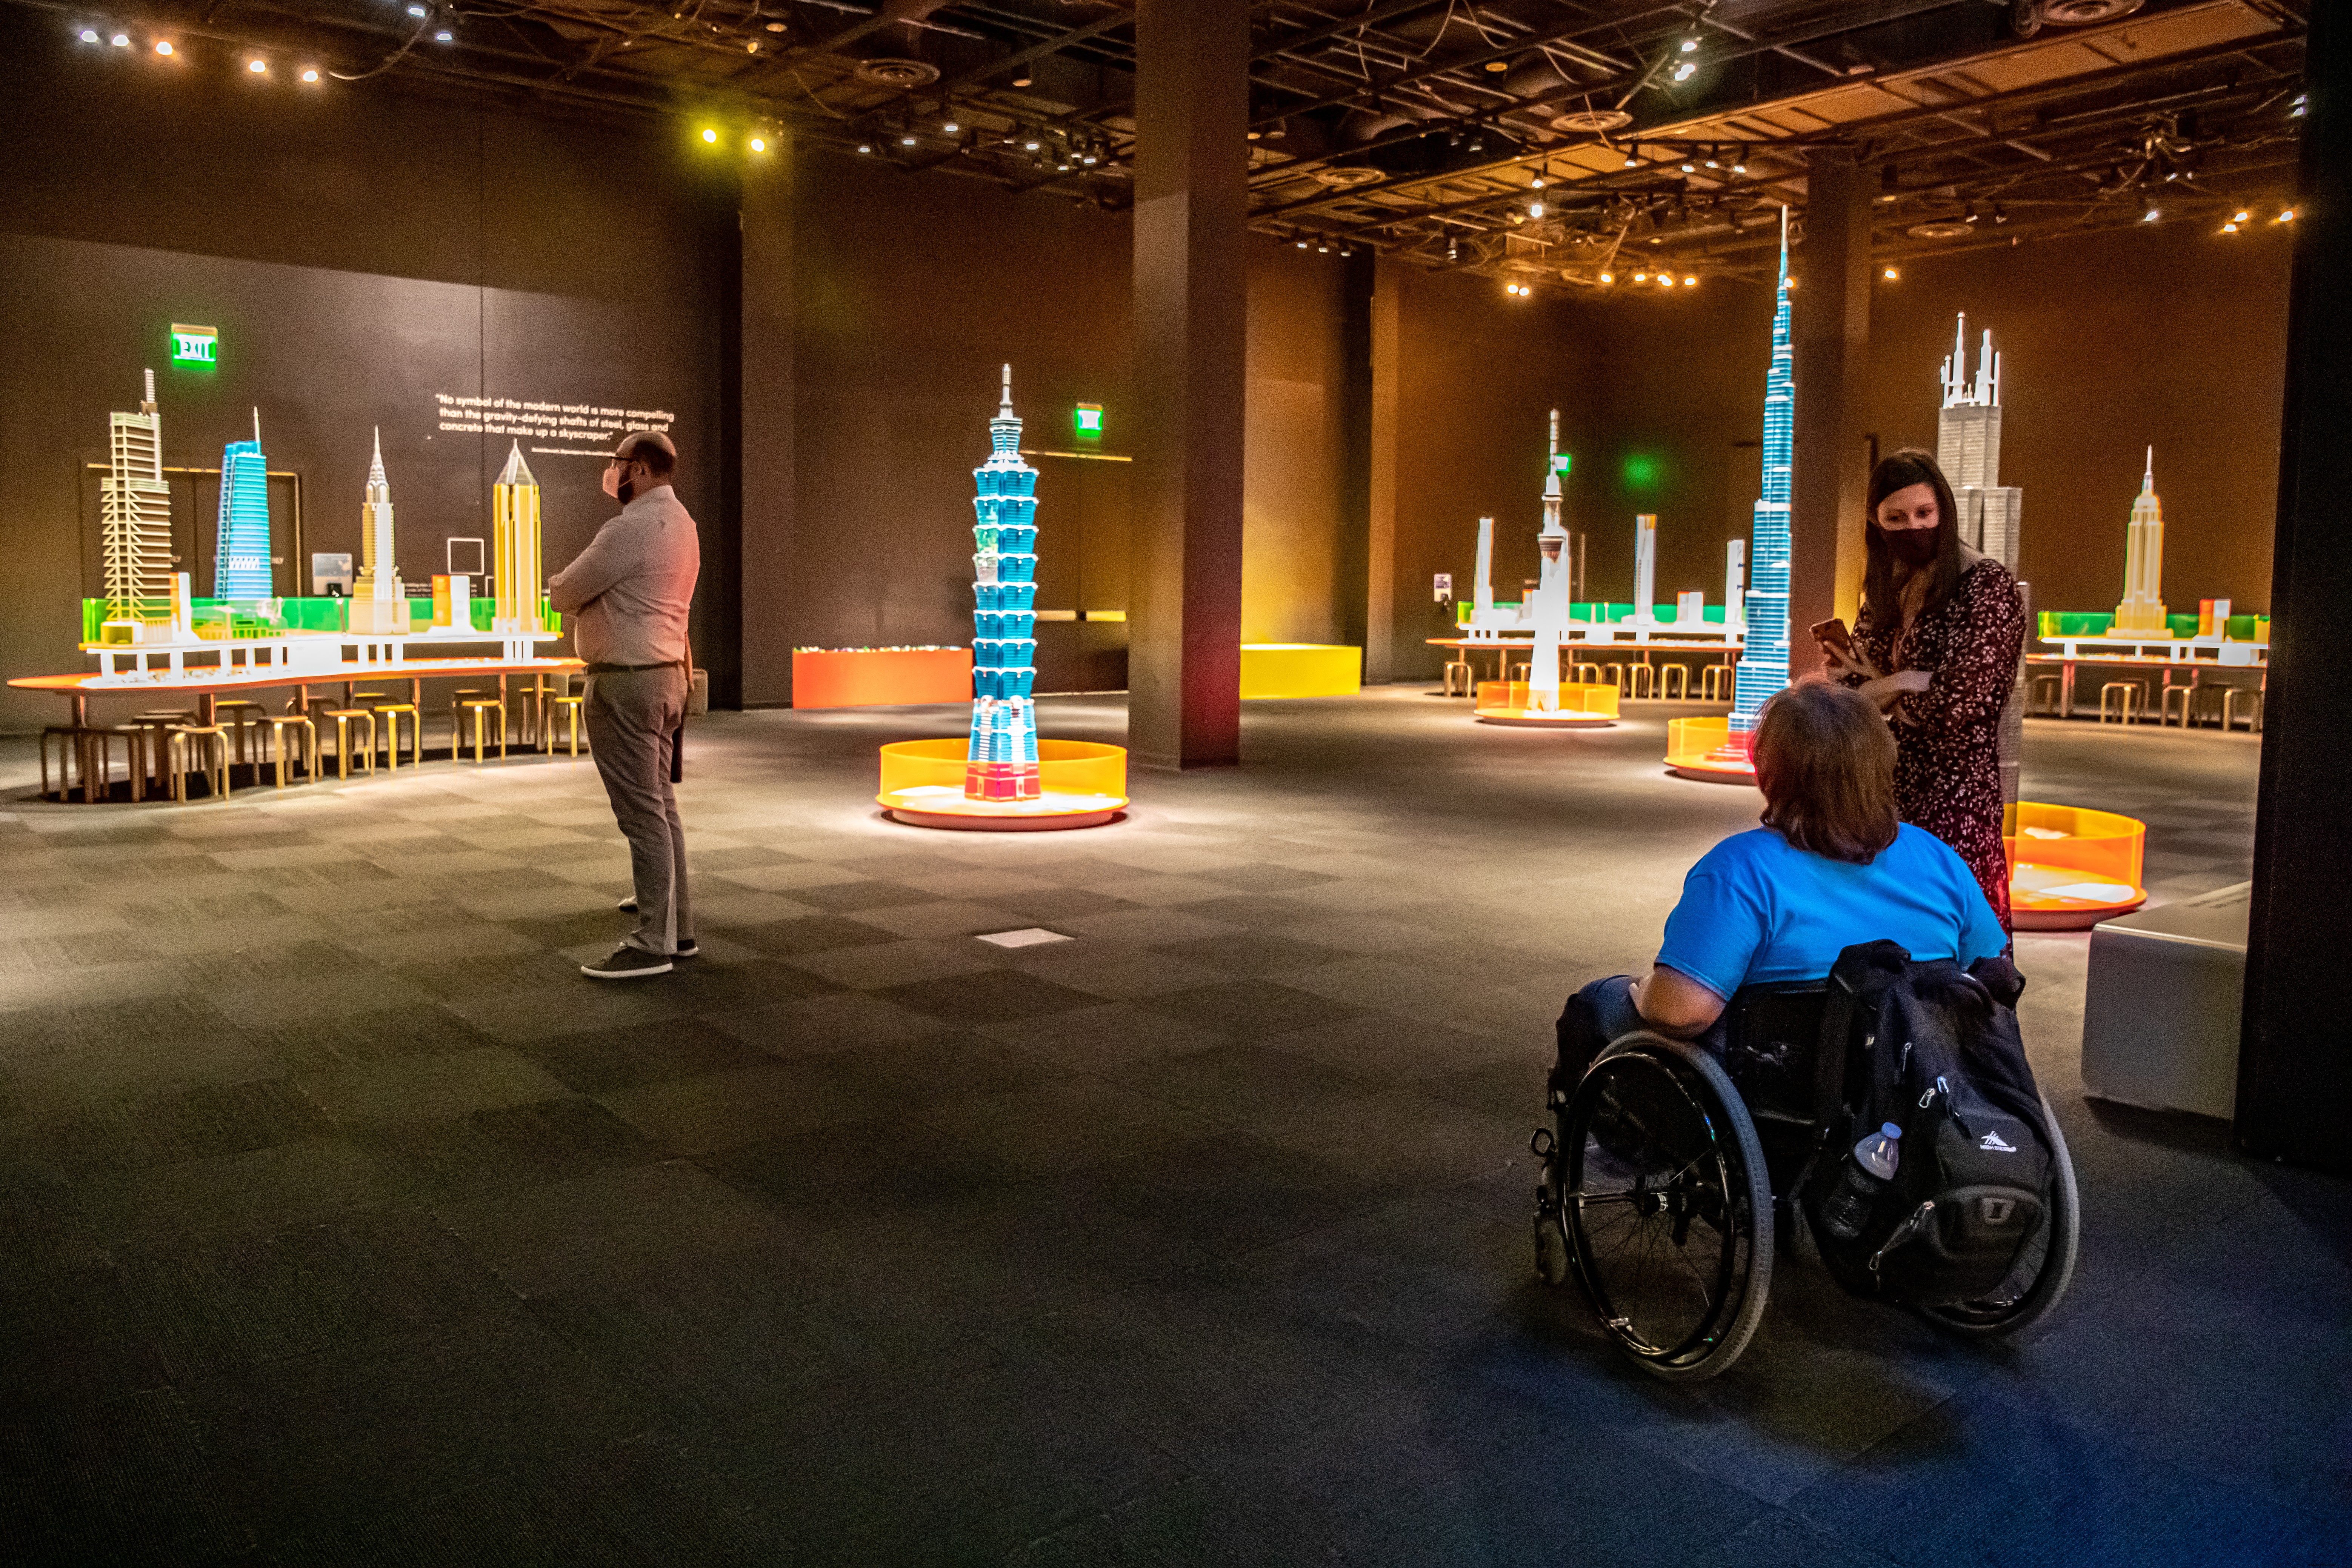 Explorez la nouvelle exposition des musées Perot : Tours of Tomorrow avec des briques LEGO 